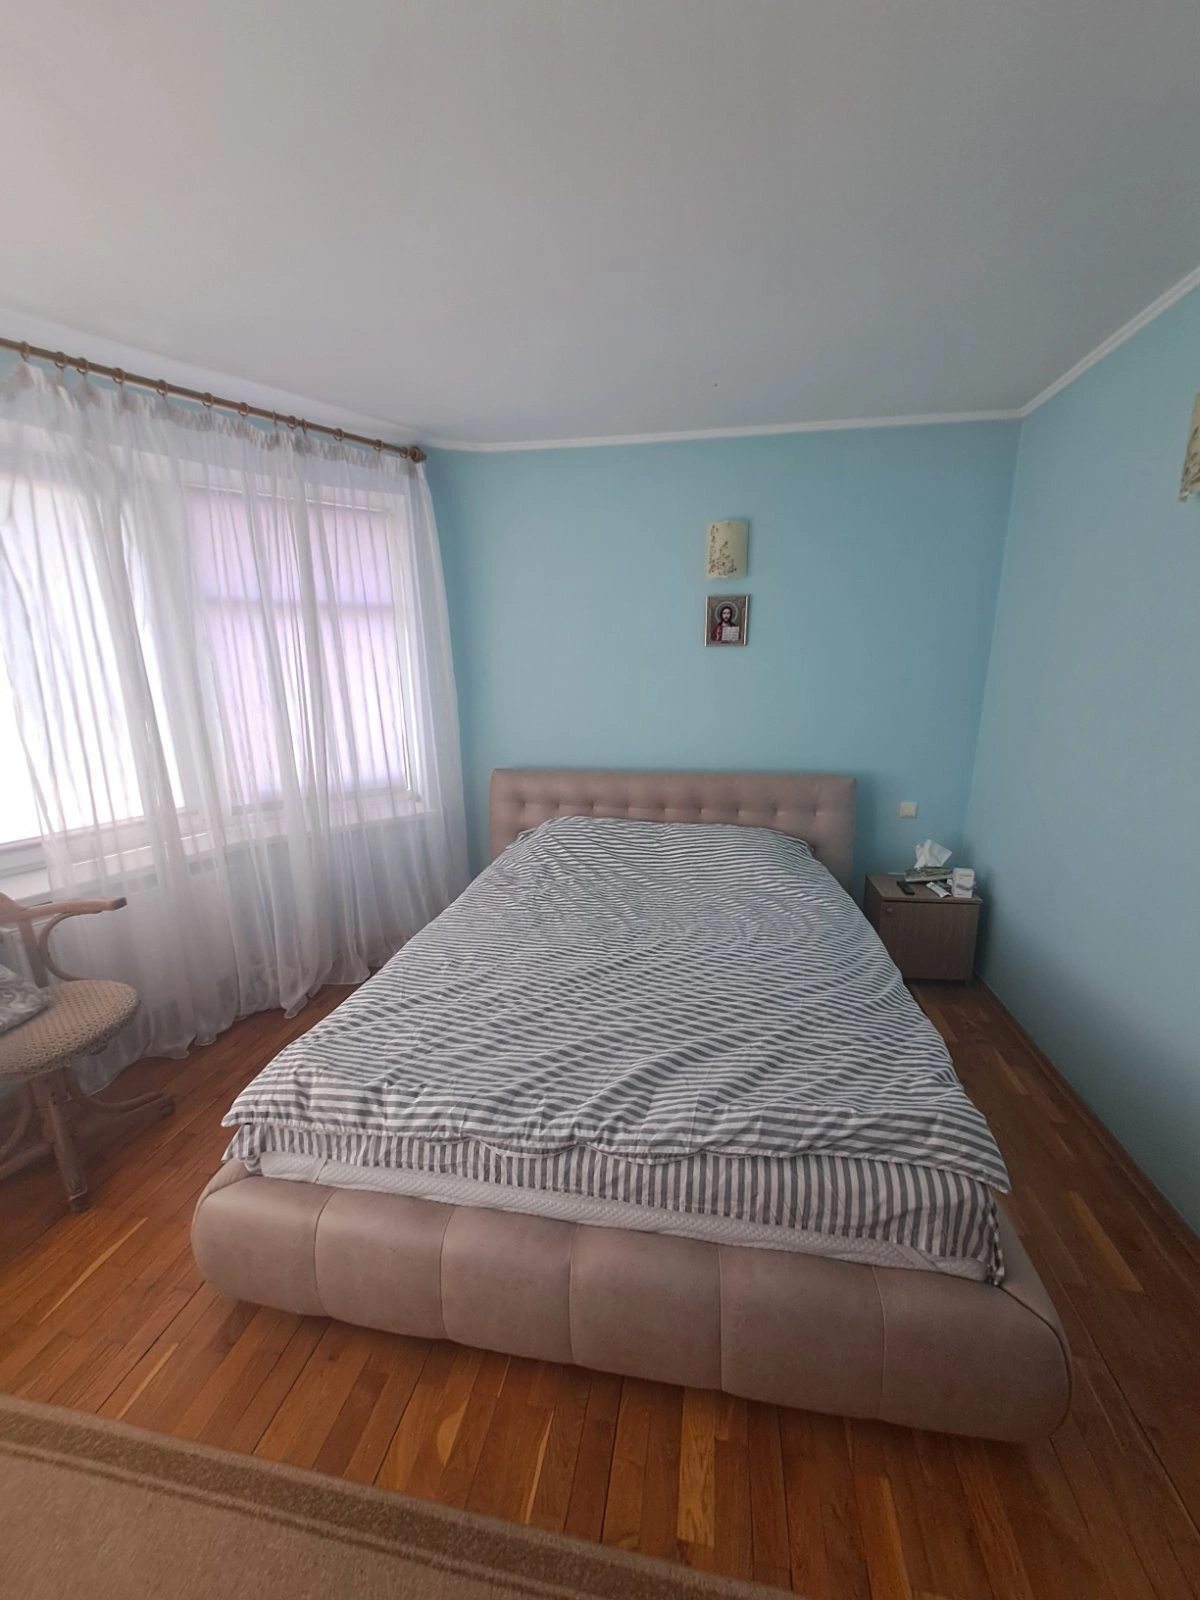 Продаж будинку. 319 m², 2 floors. Пронятин, Тернопіль. 